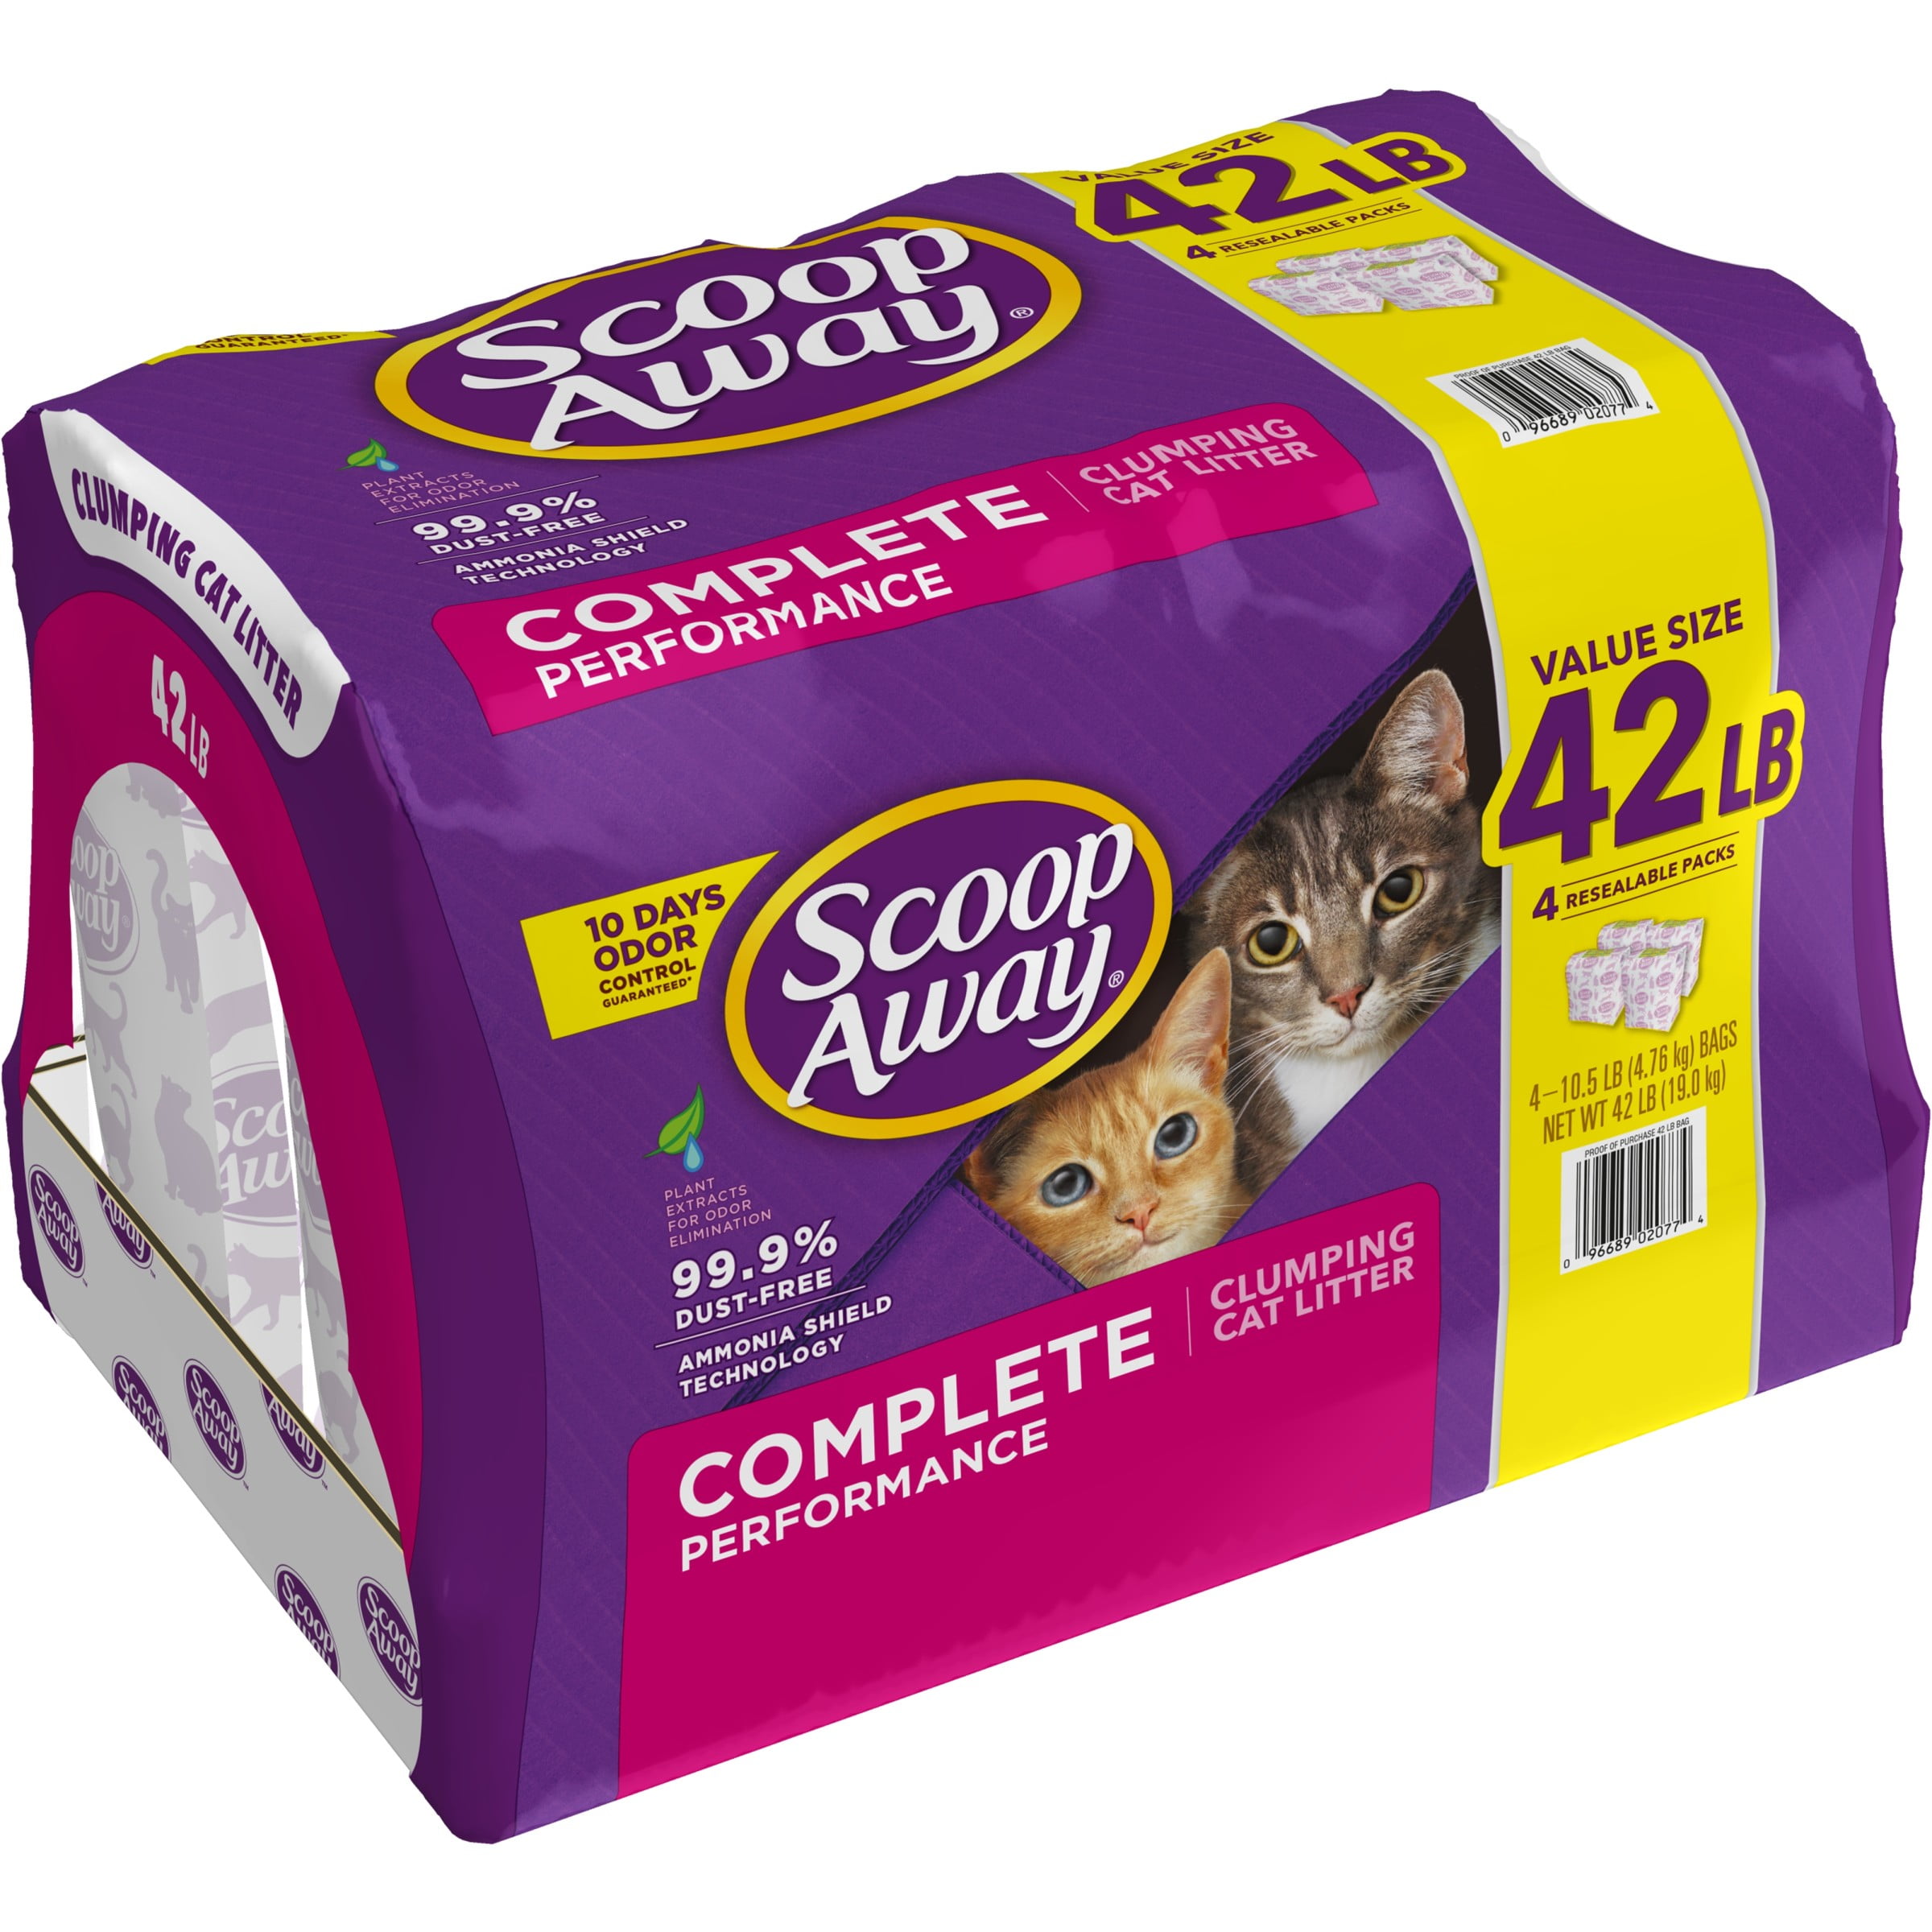 Scoop Away - Arena perfumada para gatos, rendimiento completo, 42 libras